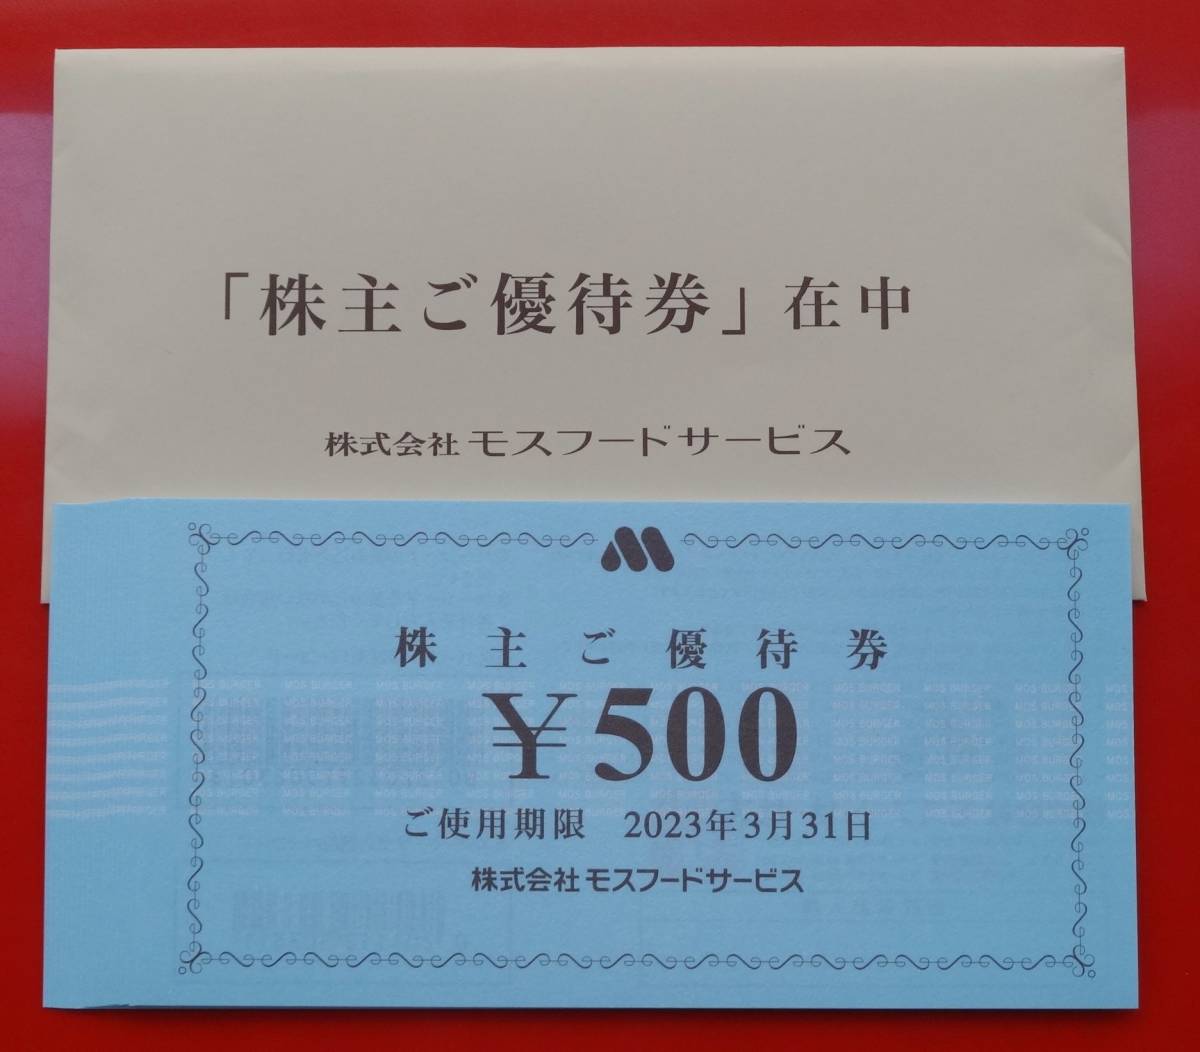 モスフードサービス 株主優待券 10000円分(500円券×20枚)モスバーガー